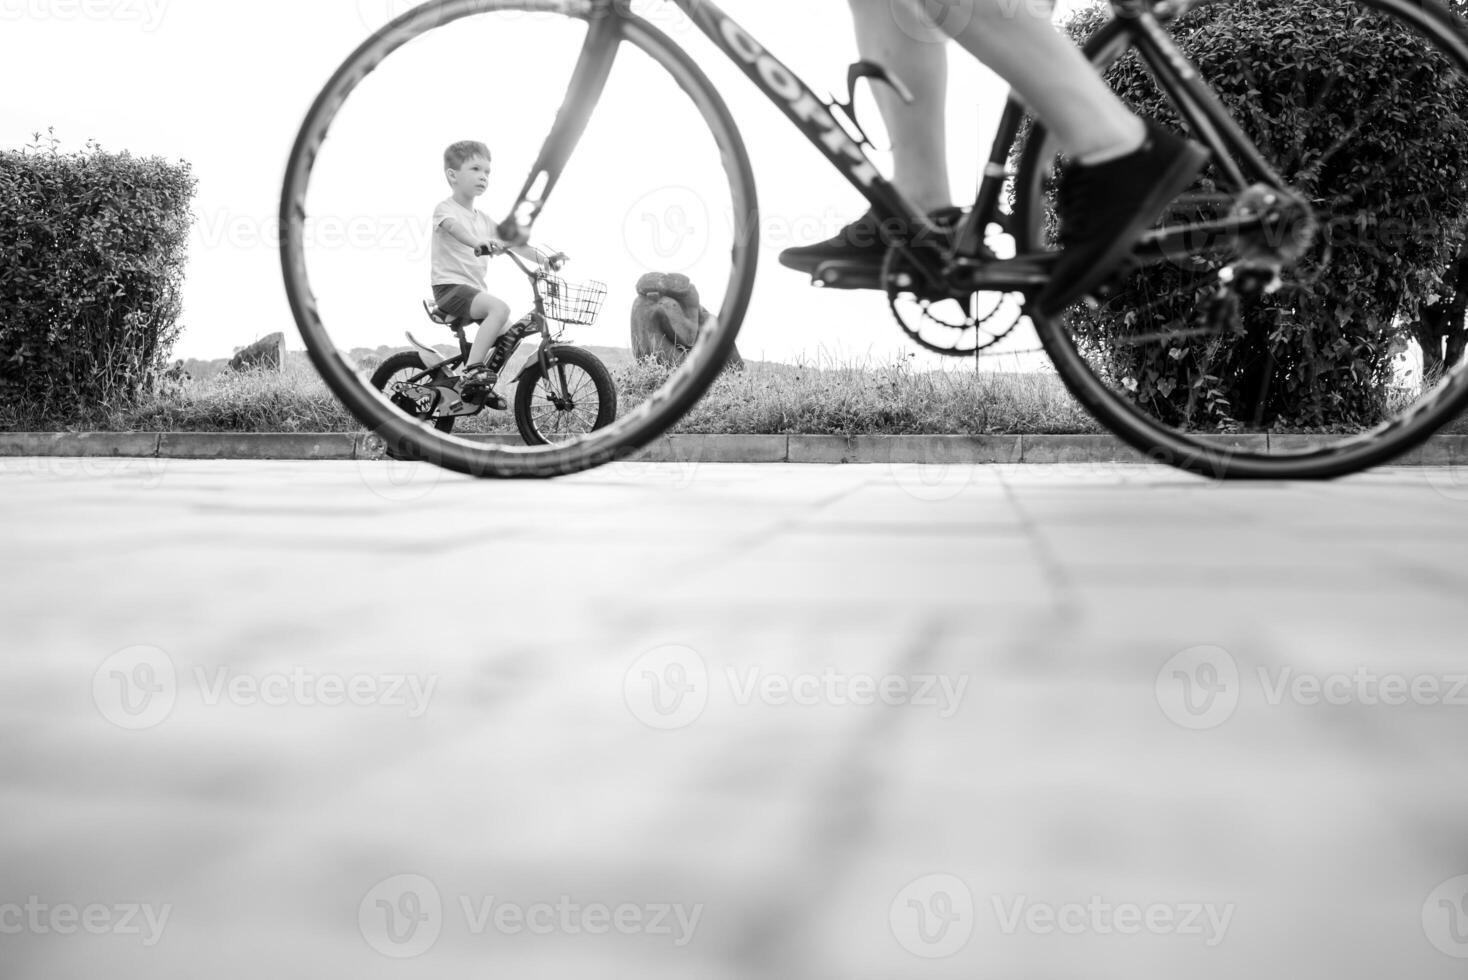 kinderen Aan een fiets Bij asfalt weg in vroeg ochtend. weinig jongen leert naar rijden een fiets in de park. gelukkig glimlachen kind, rijden een wielersport. foto